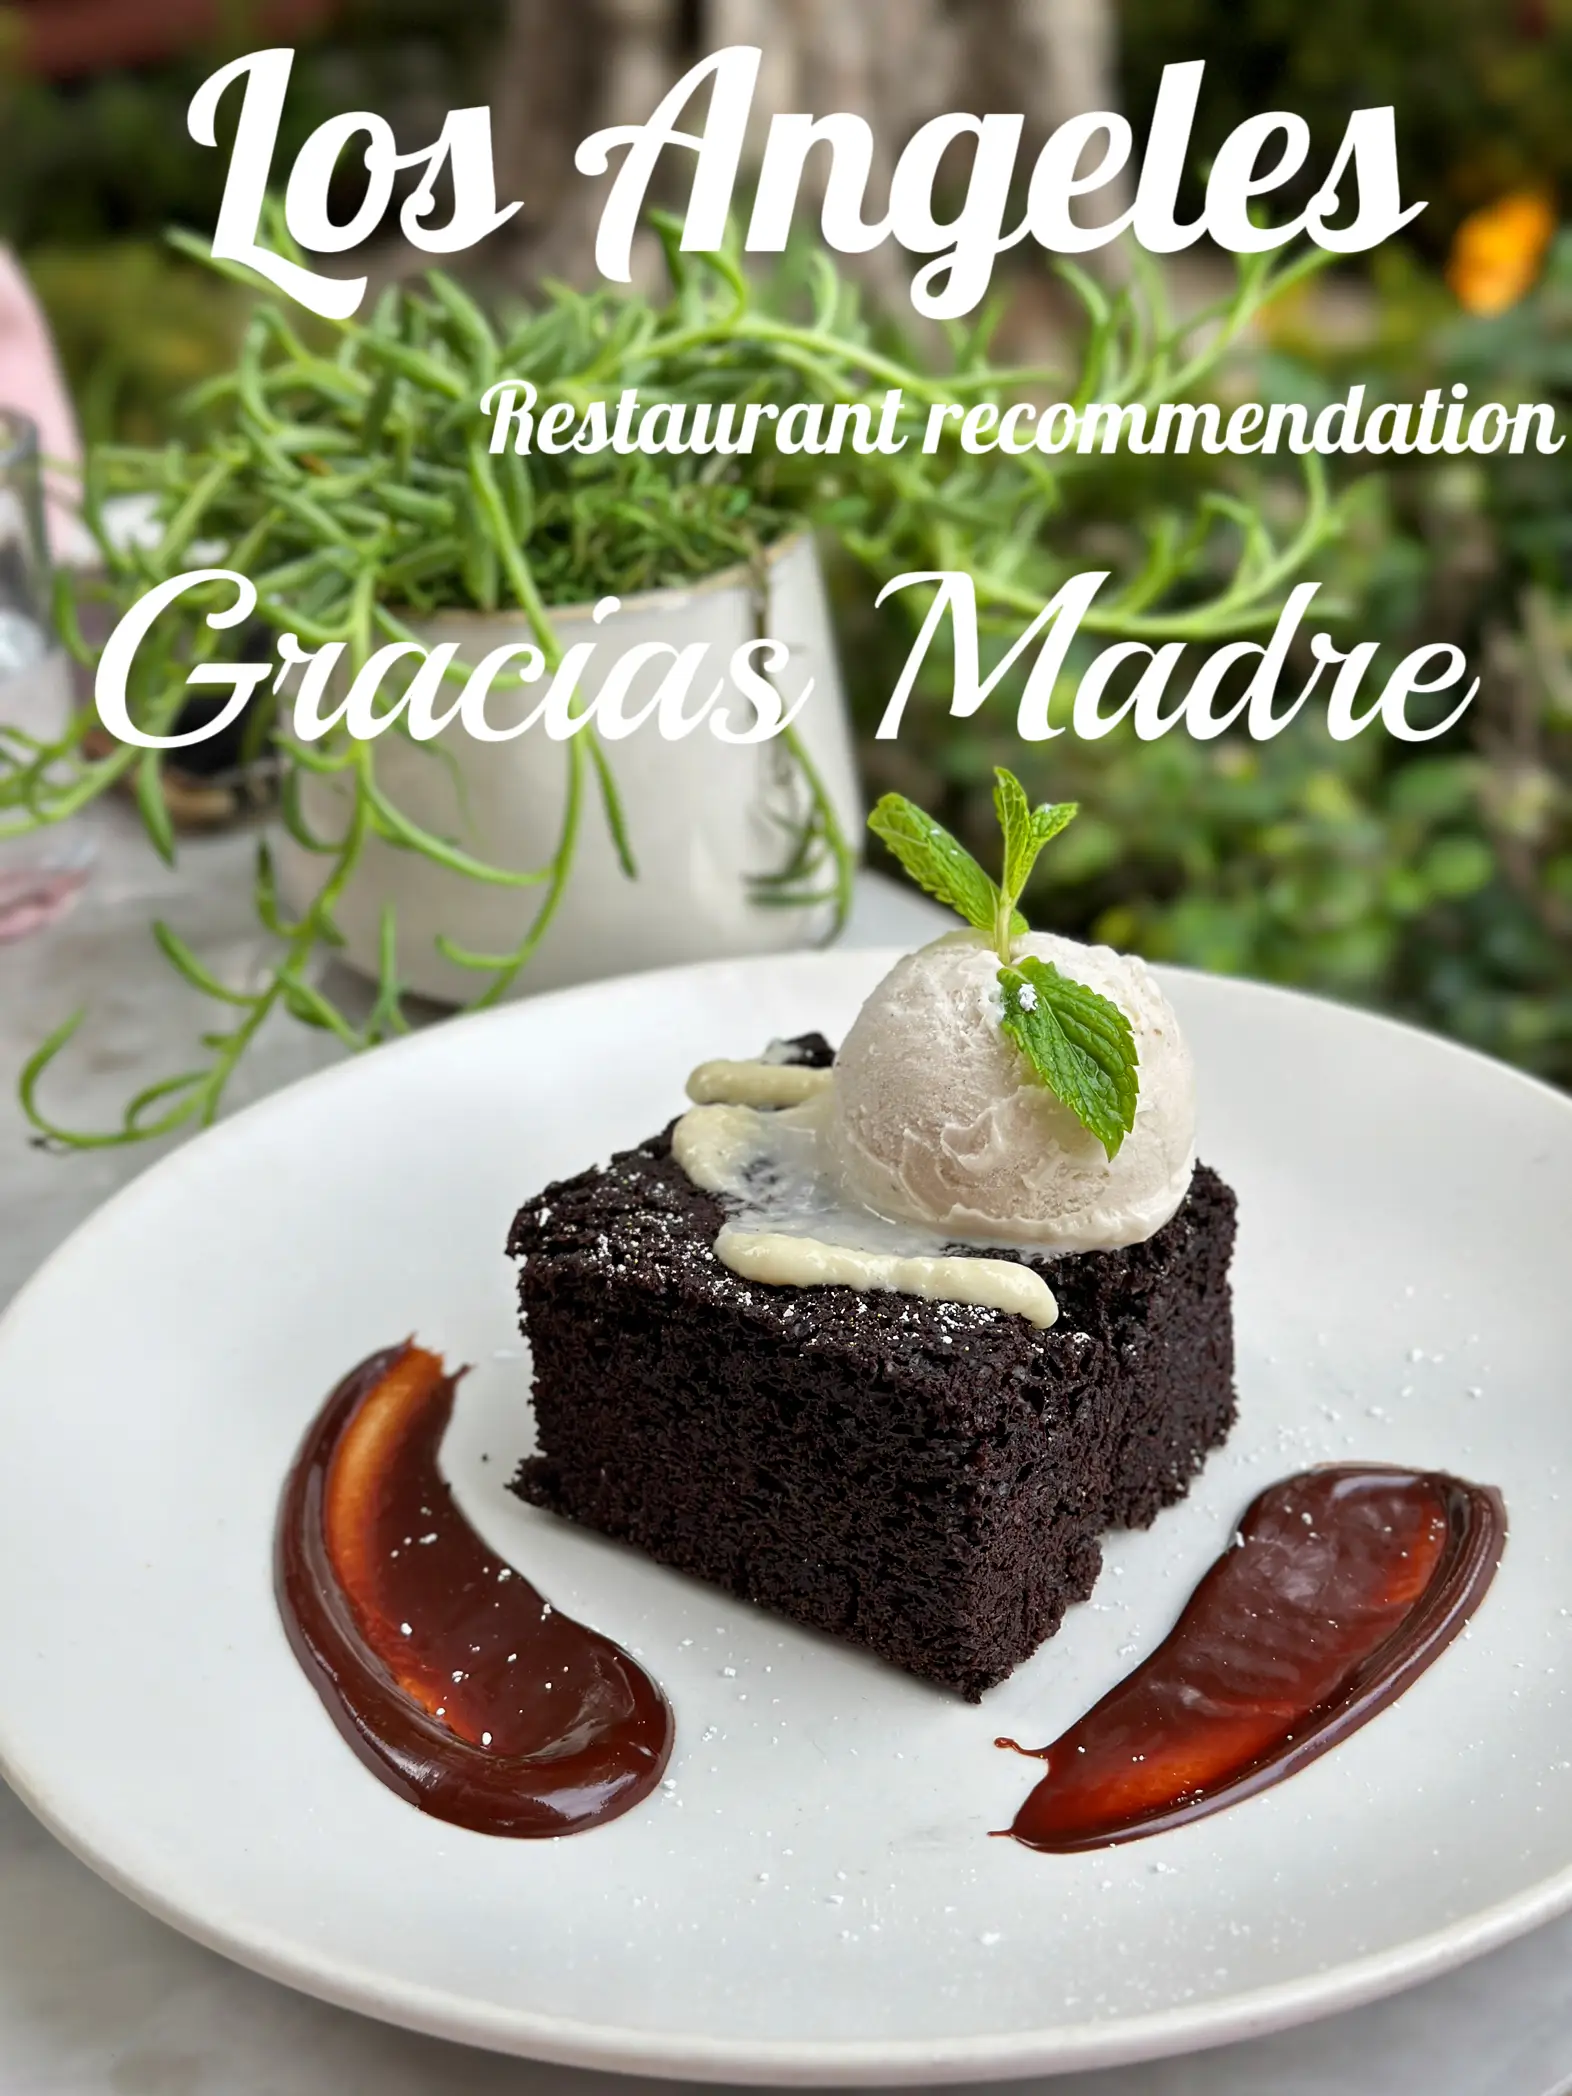 LA restaurant recommendation 🤍 Gracias Madre's images